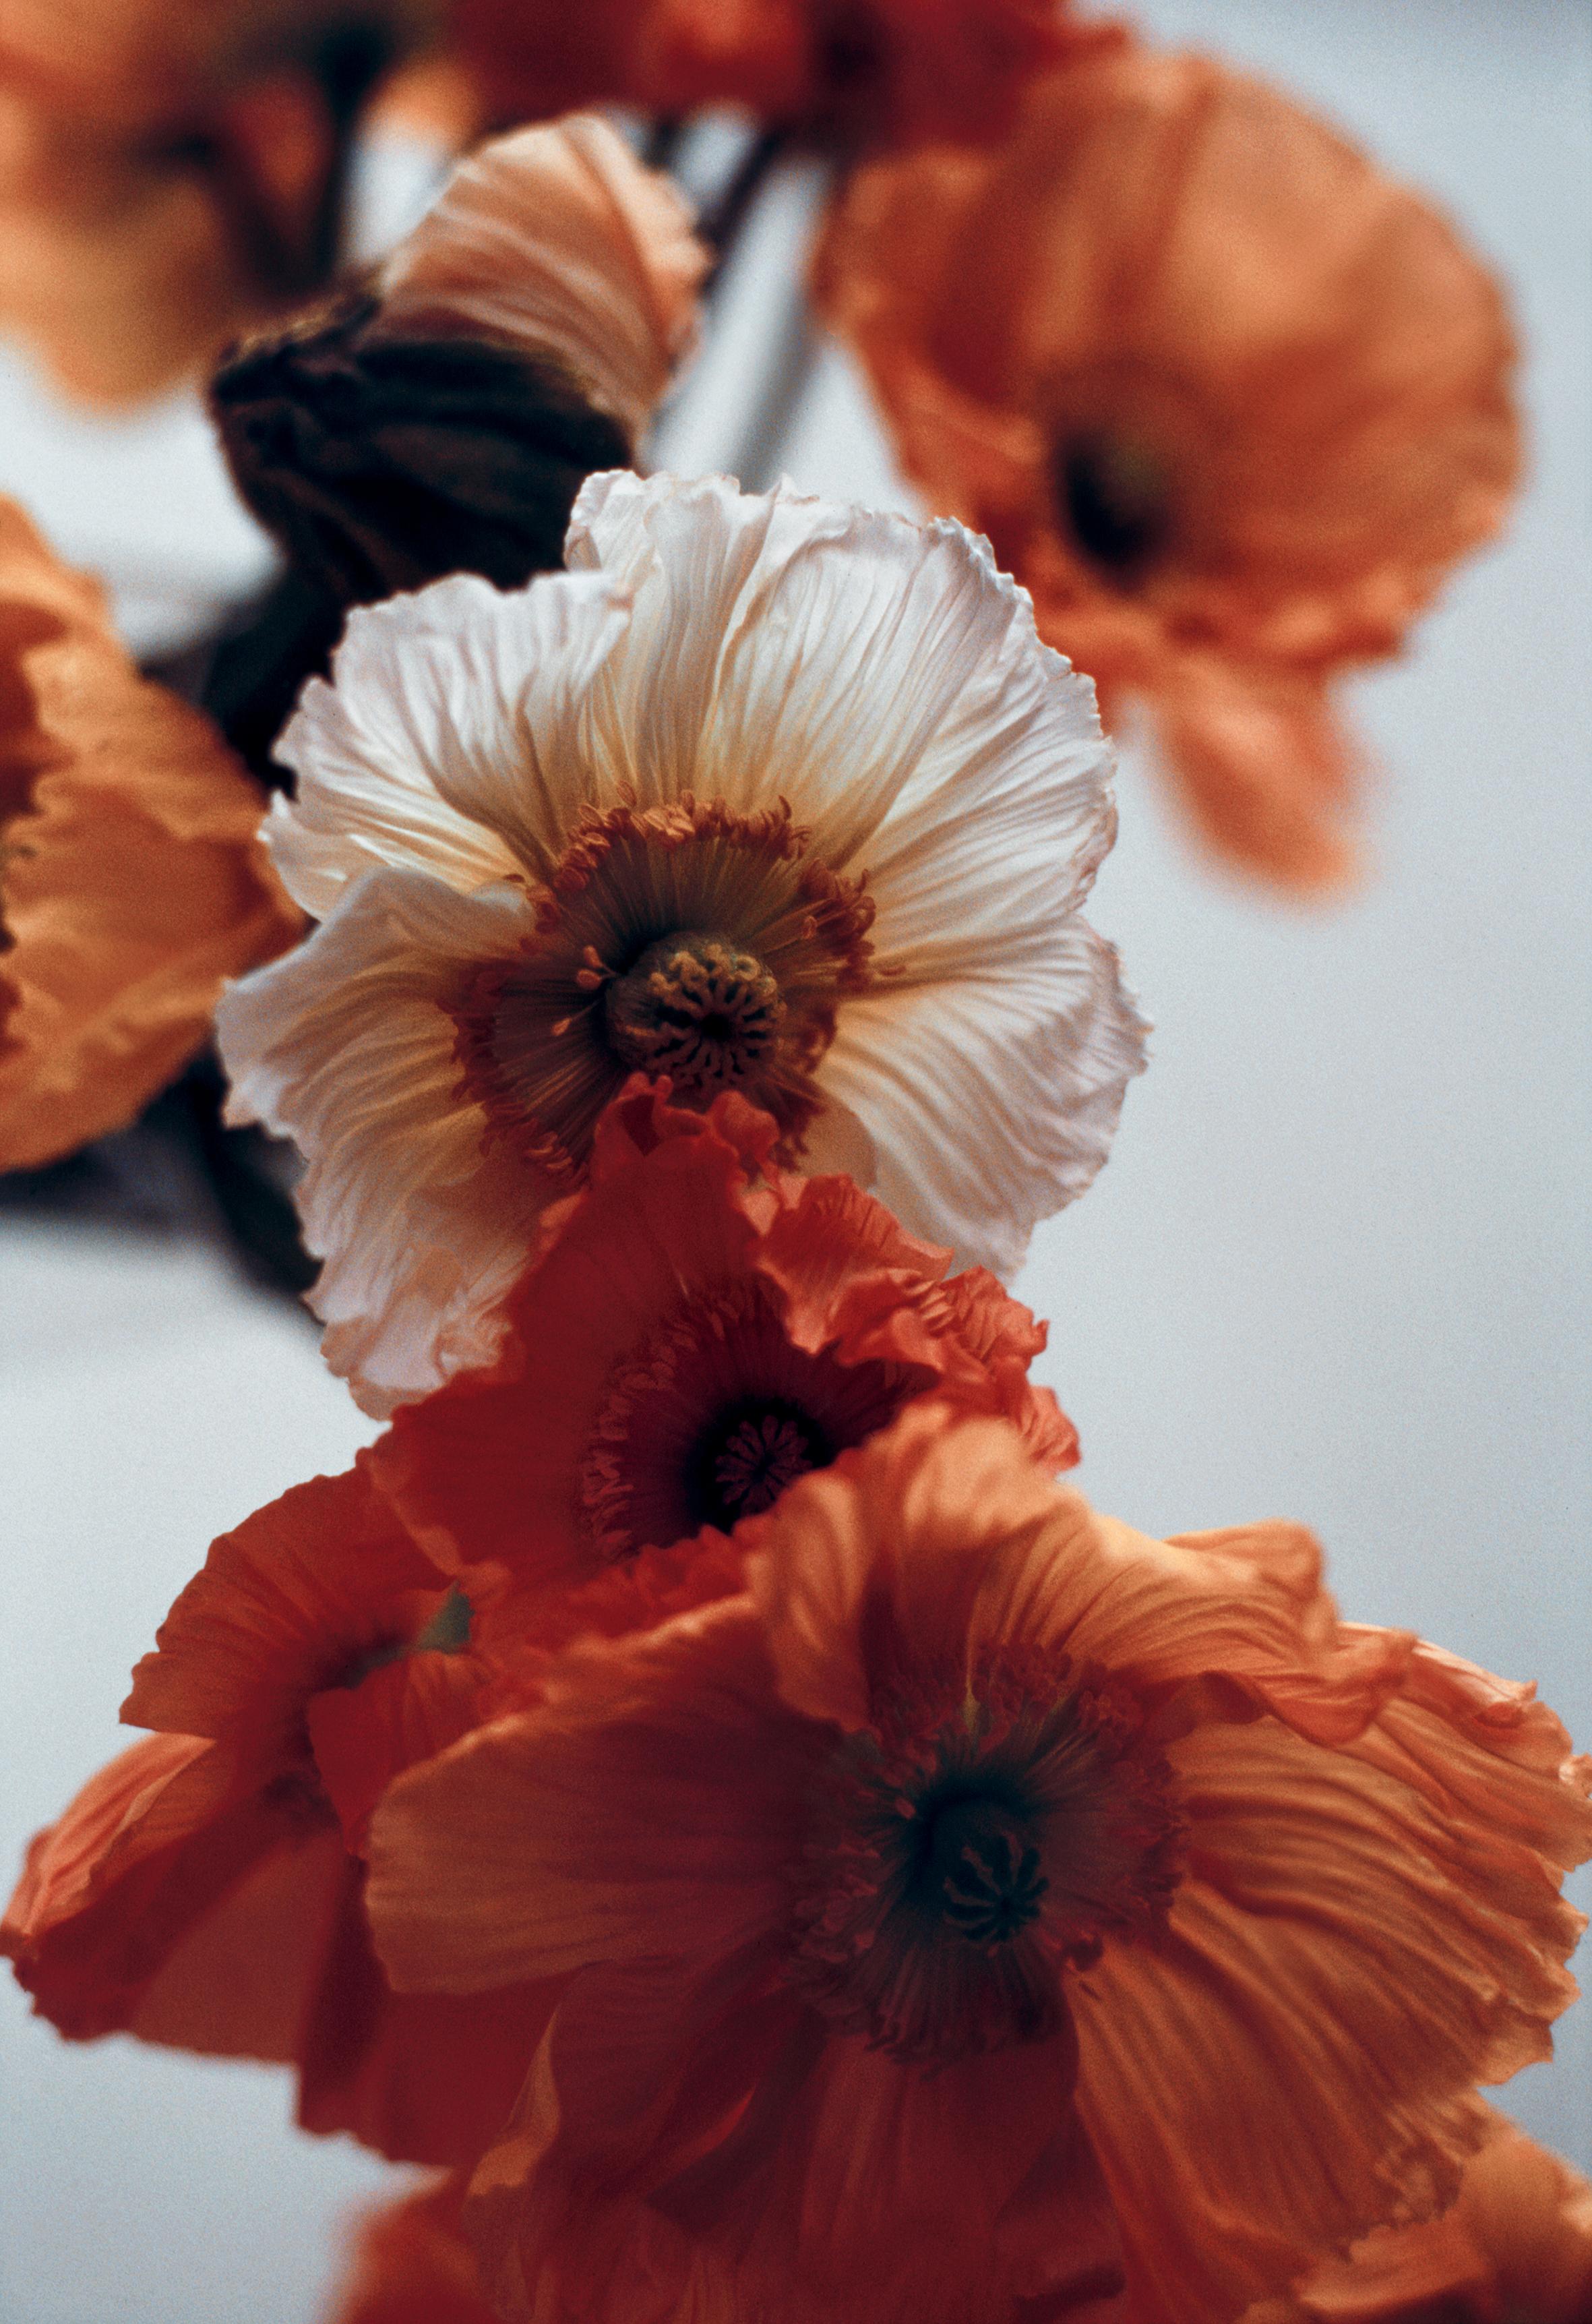 Poppies orange n°4 - Photographie florale analogue, édition limitée à 20 exemplaires